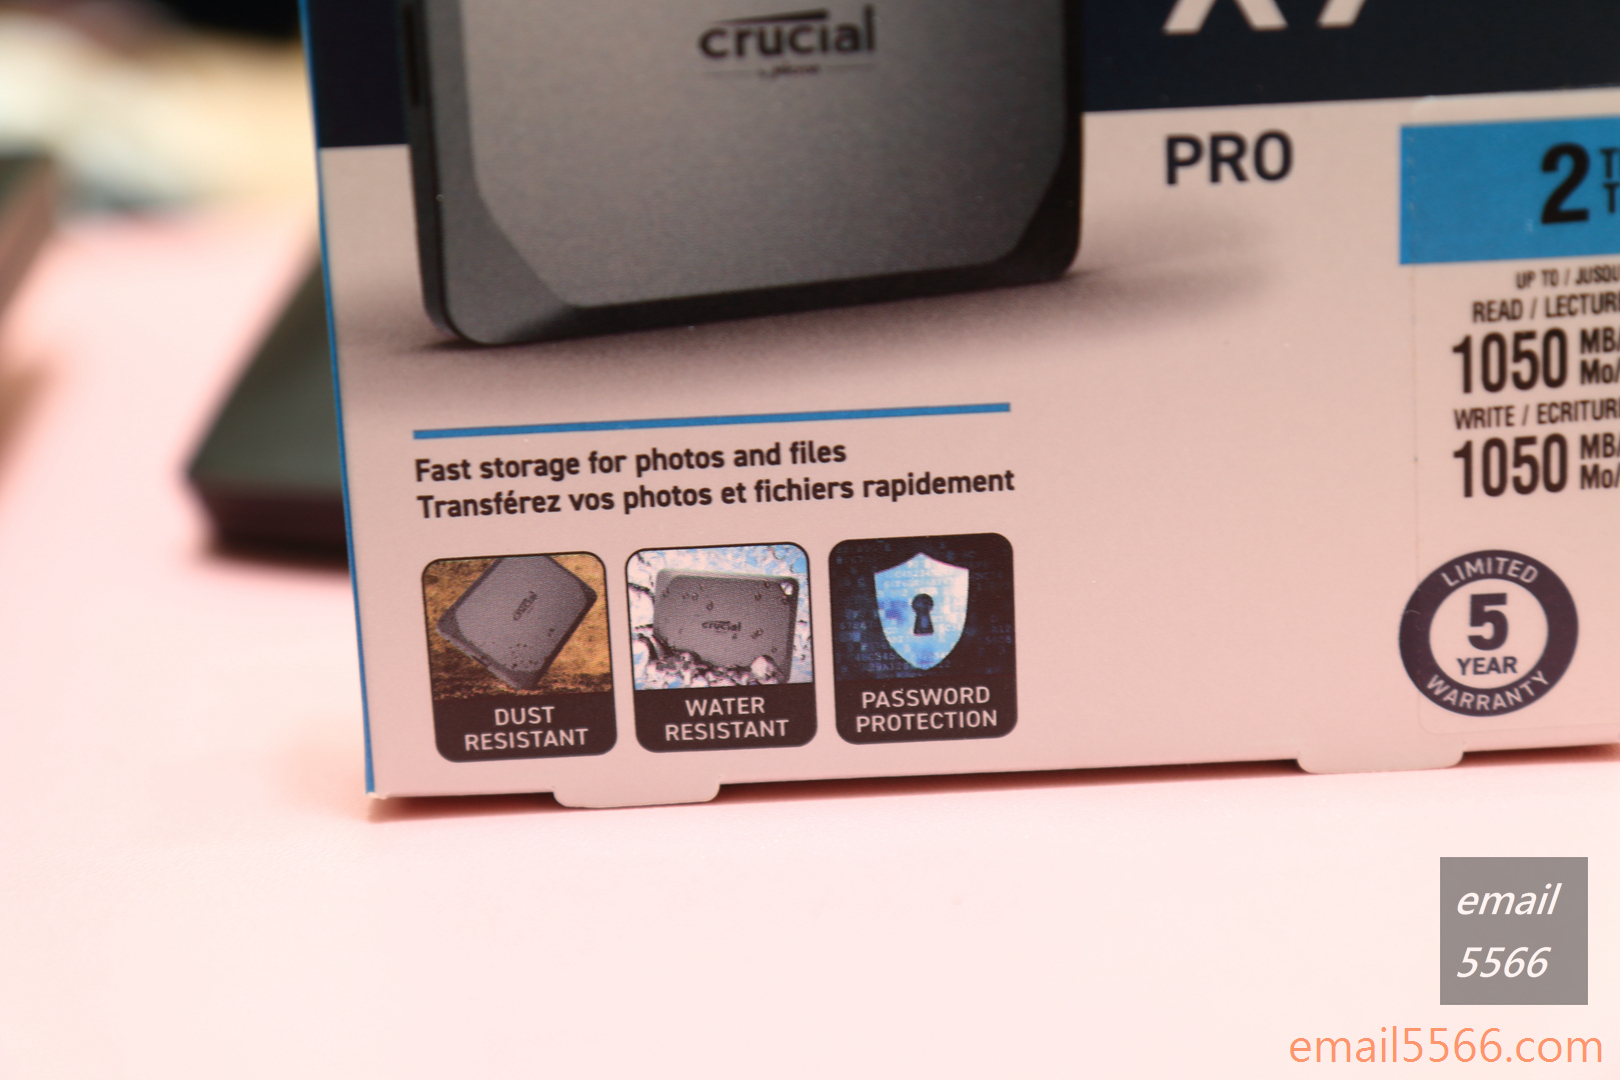 美光 Crucial X9 Pro 行動SSD硬碟 2TB 開箱-防塵、防潑水、密碼保護設計